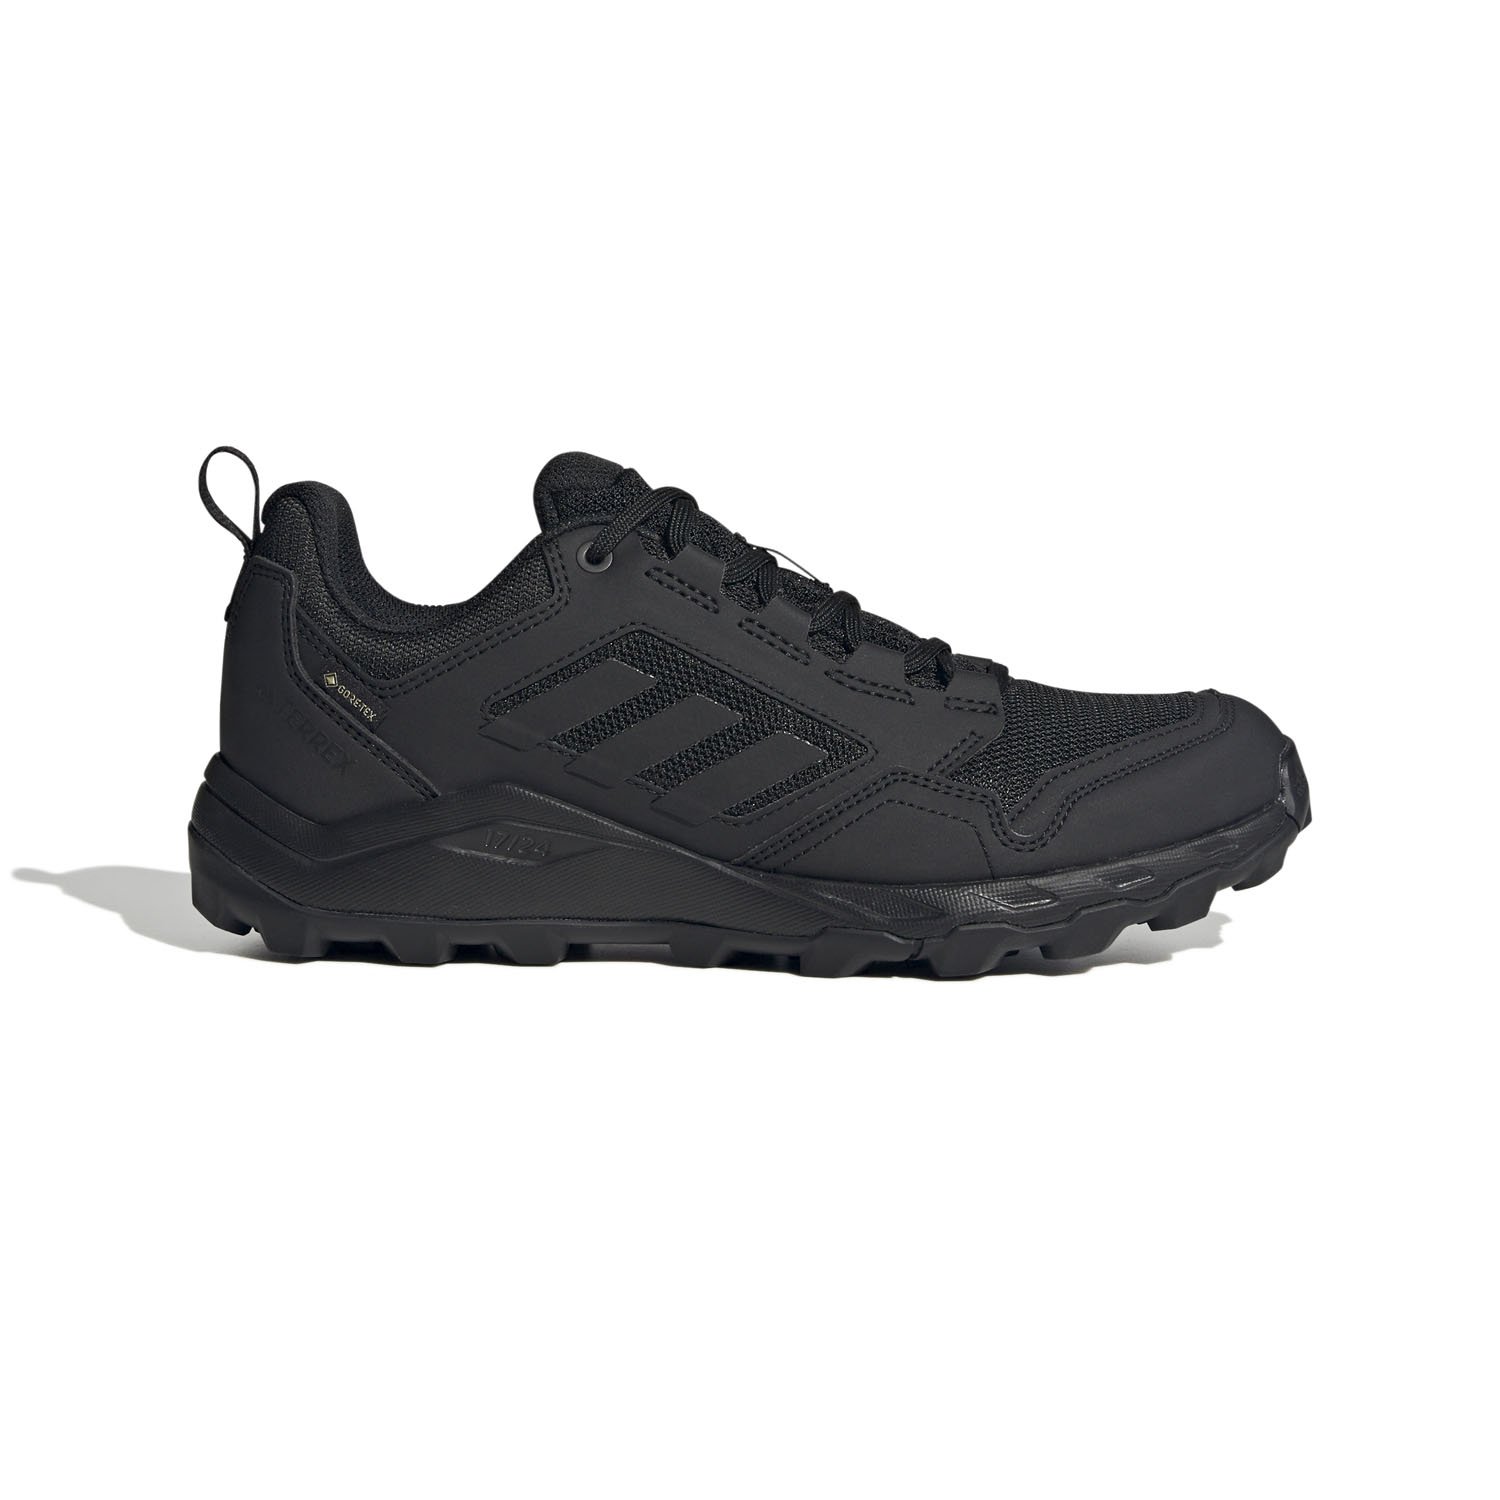 Adidas Ultraboost Light Kadın Yol Koşu Ayakkabısı - Siyah - 1